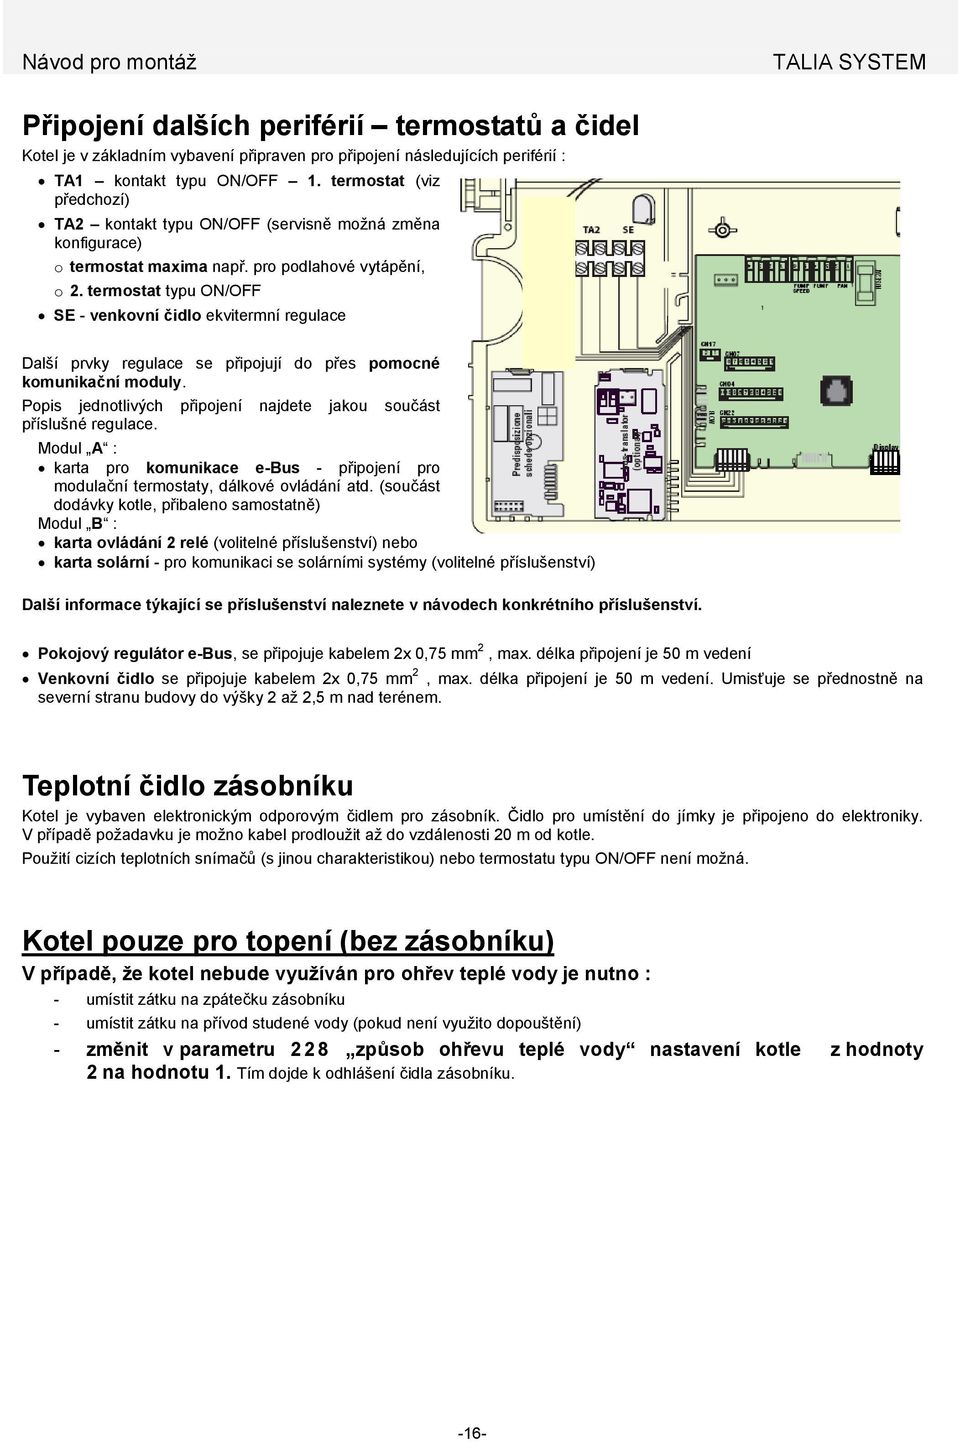 termostat typu ON/OFF SE - venkovní čidlo ekvitermní regulace Další prvky regulace se připojují do přes pomocné komunikační moduly.